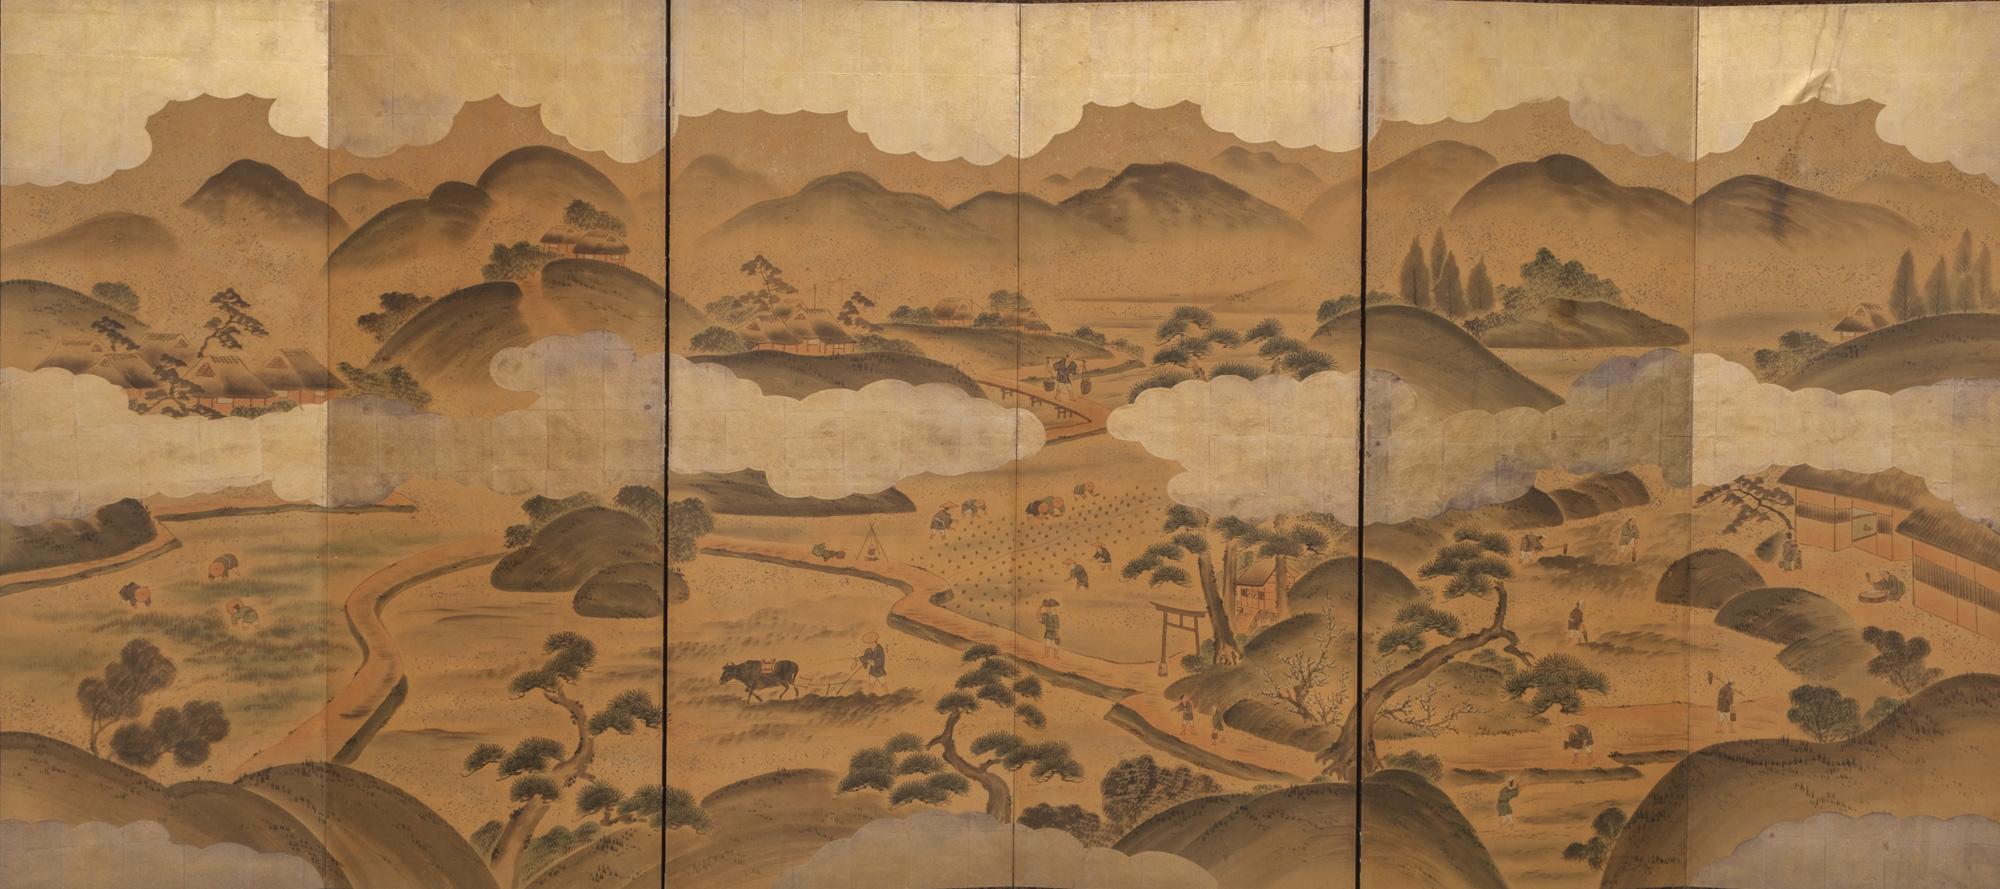 Fascinant grand byôbu (paravent) à six panneaux avec une peinture de genre détaillée sur feuille d'argent doré avec différentes scènes de personnes au travail dans un village rural de montagne pendant la période Edo.

Les agriculteurs travaillent